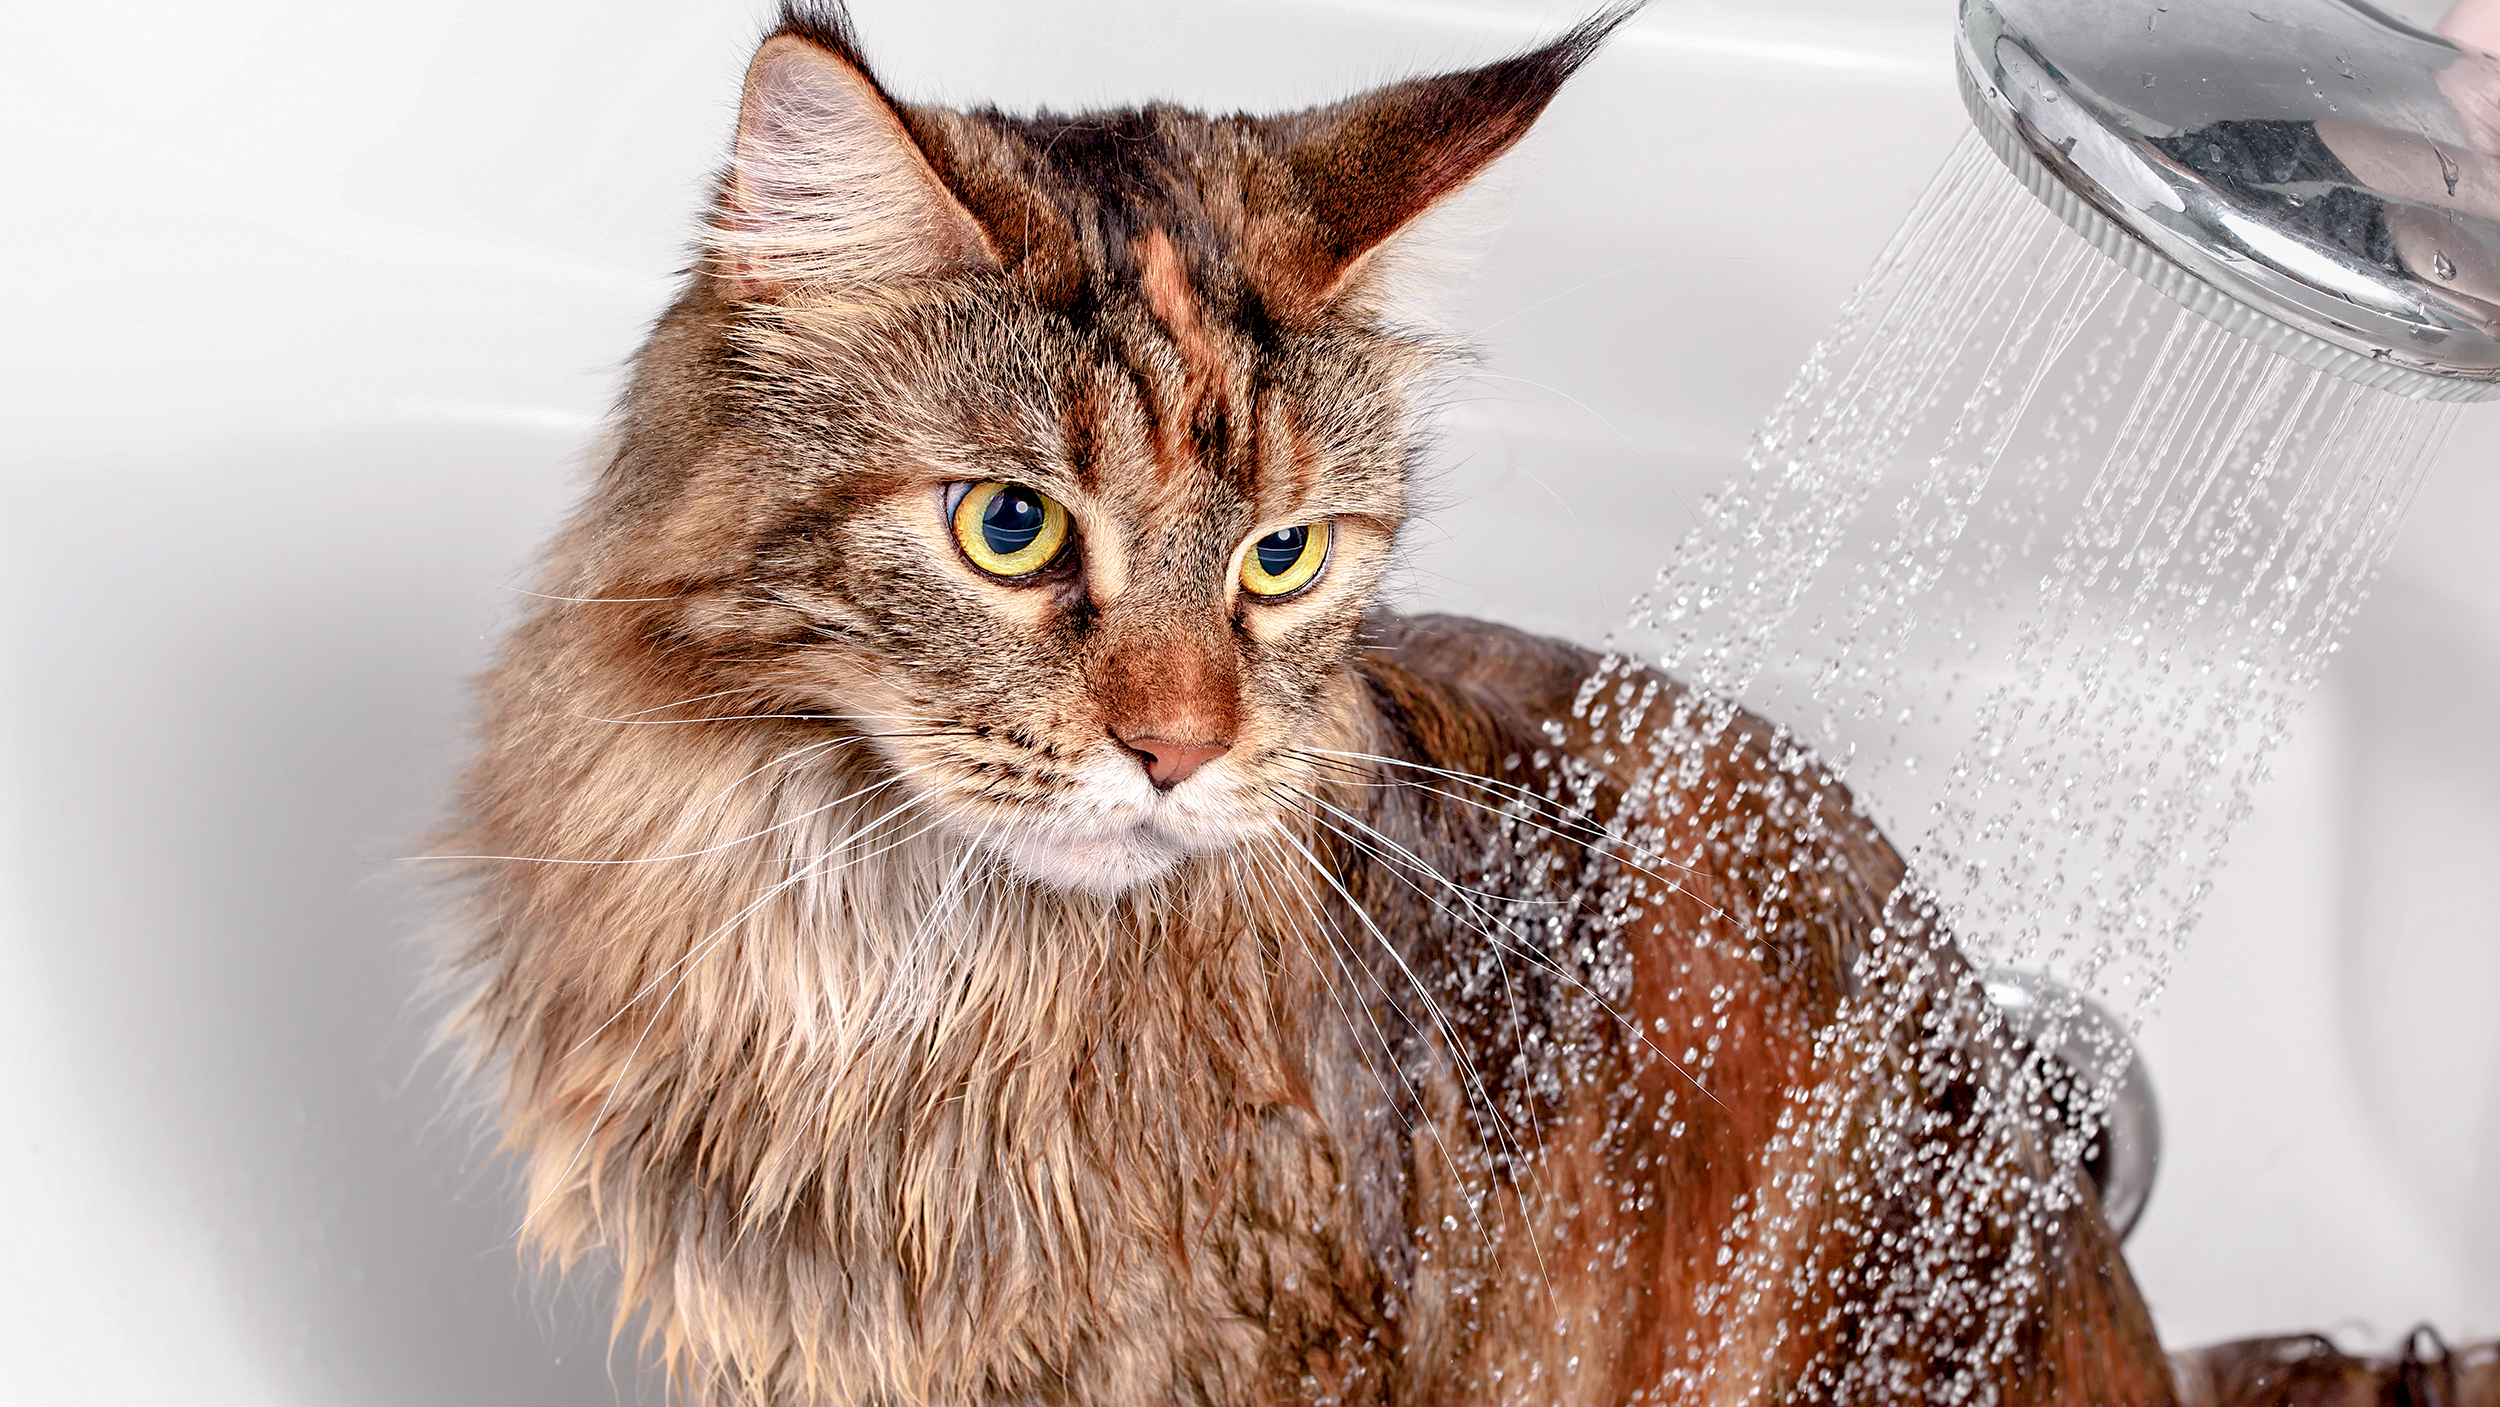 Kucing Maine Coon dewasa duduk di bak mandi sedang dimandikan dengan pancuran.